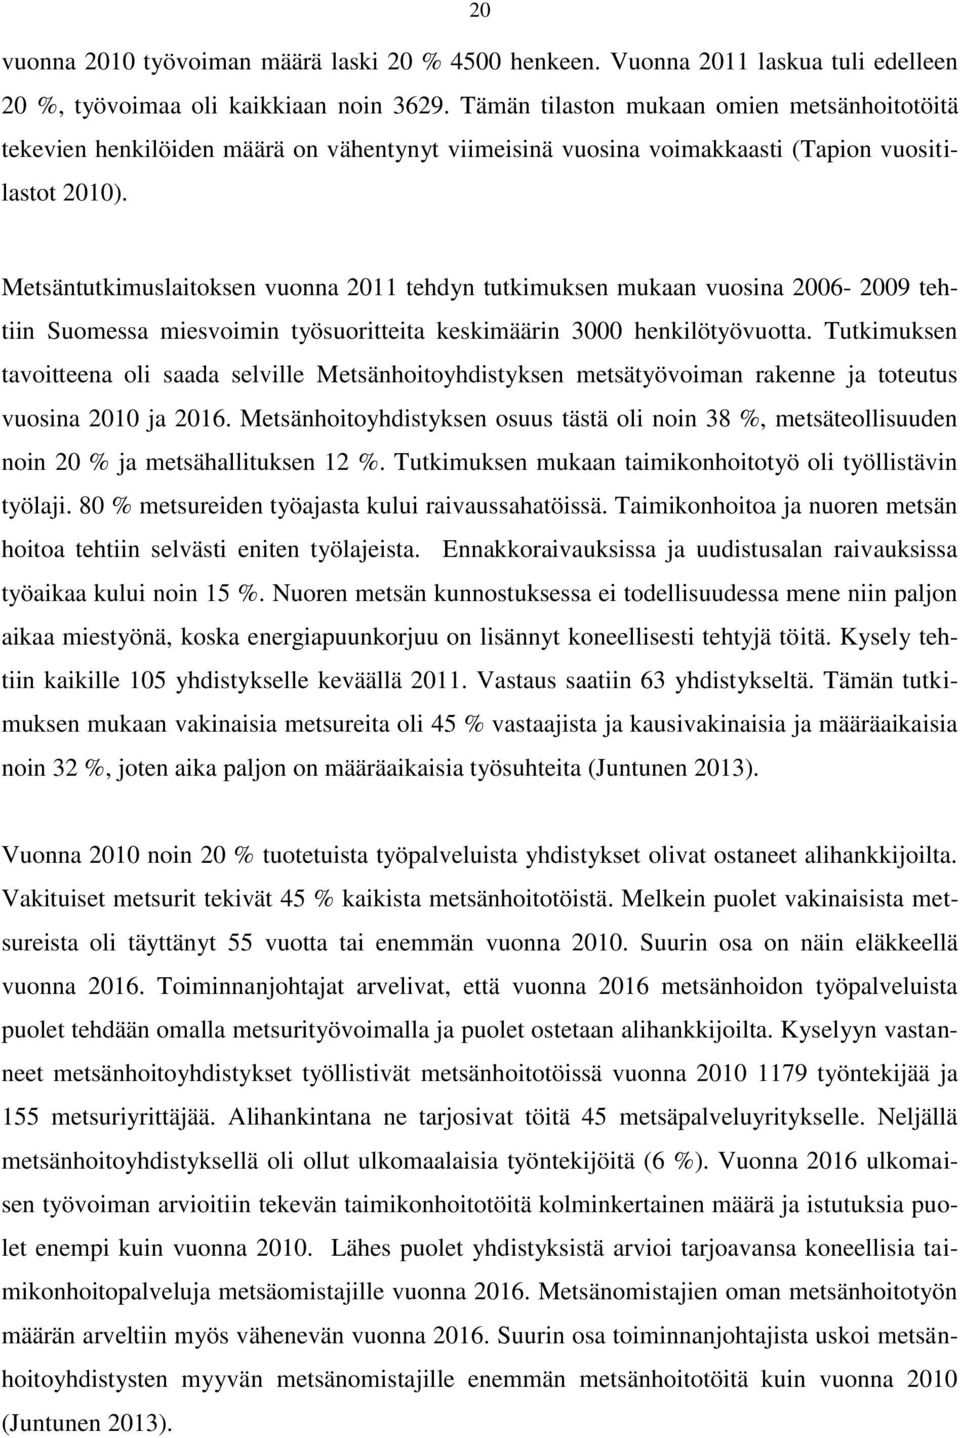 Metsäntutkimuslaitoksen vuonna 2011 tehdyn tutkimuksen mukaan vuosina 2006-2009 tehtiin Suomessa miesvoimin työsuoritteita keskimäärin 3000 henkilötyövuotta.